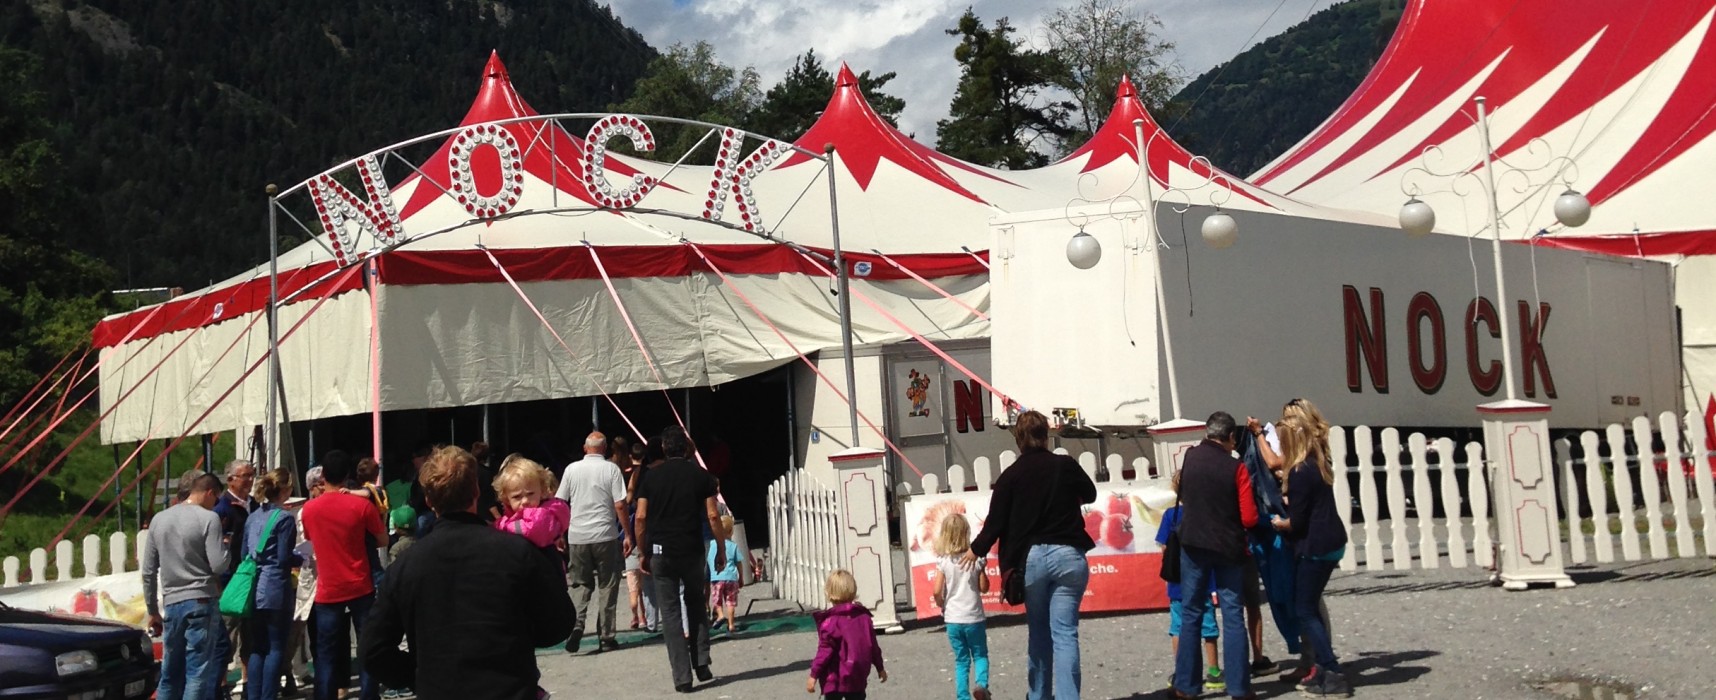 Circus Nock heute in Cazis